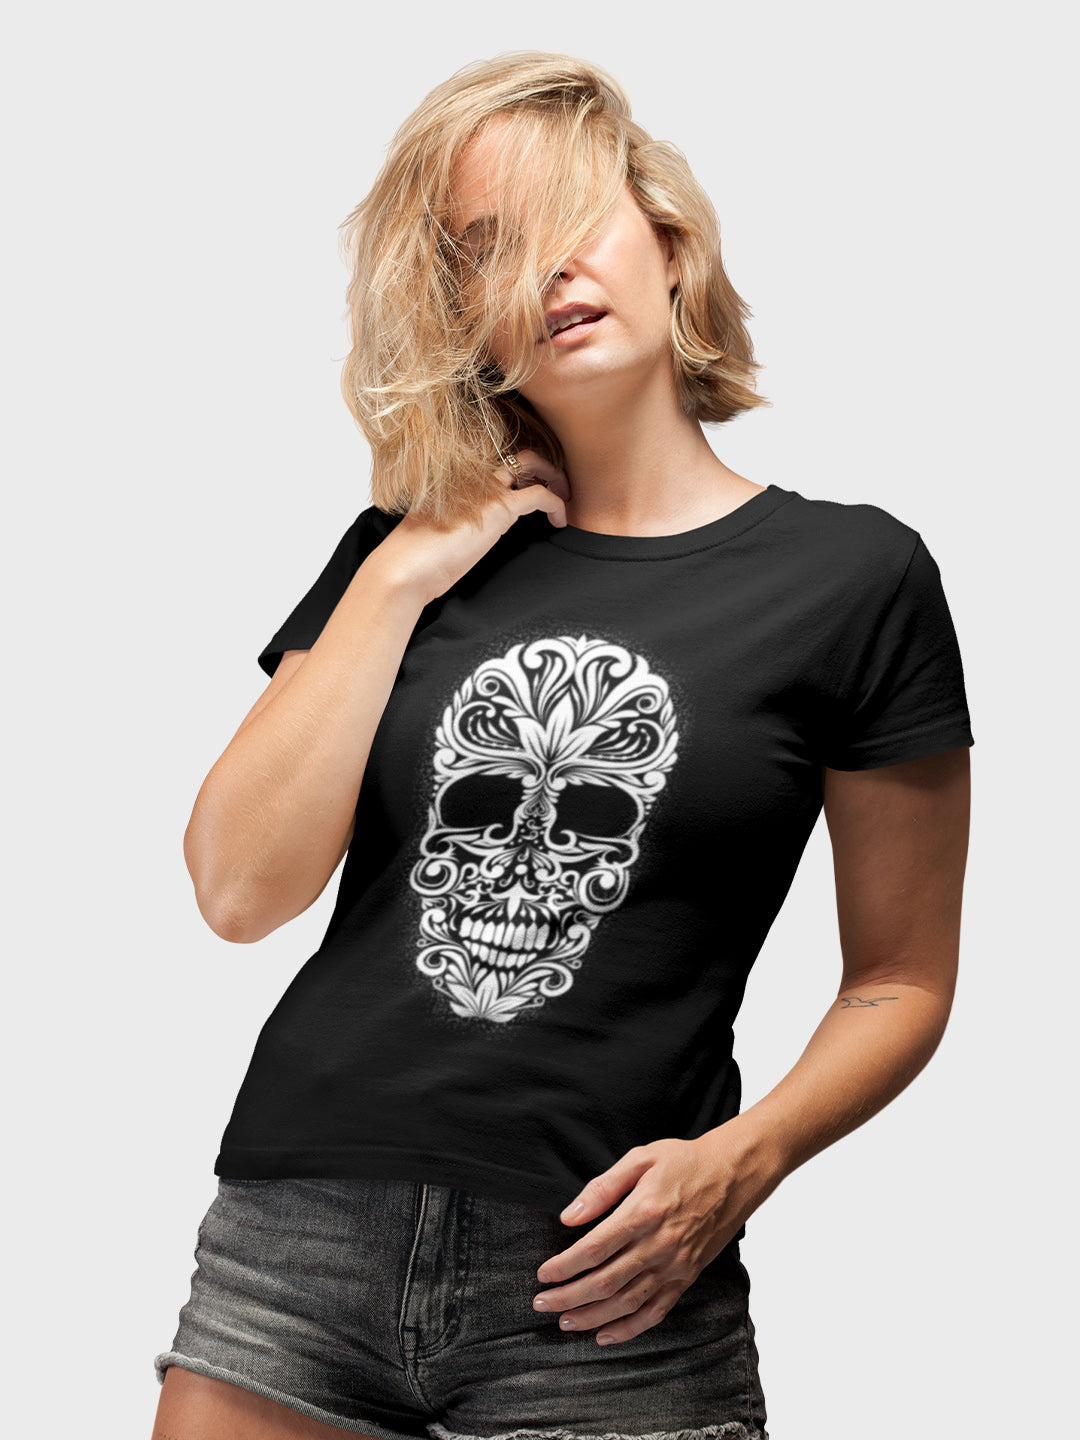 The Desi Skull T-Shirt